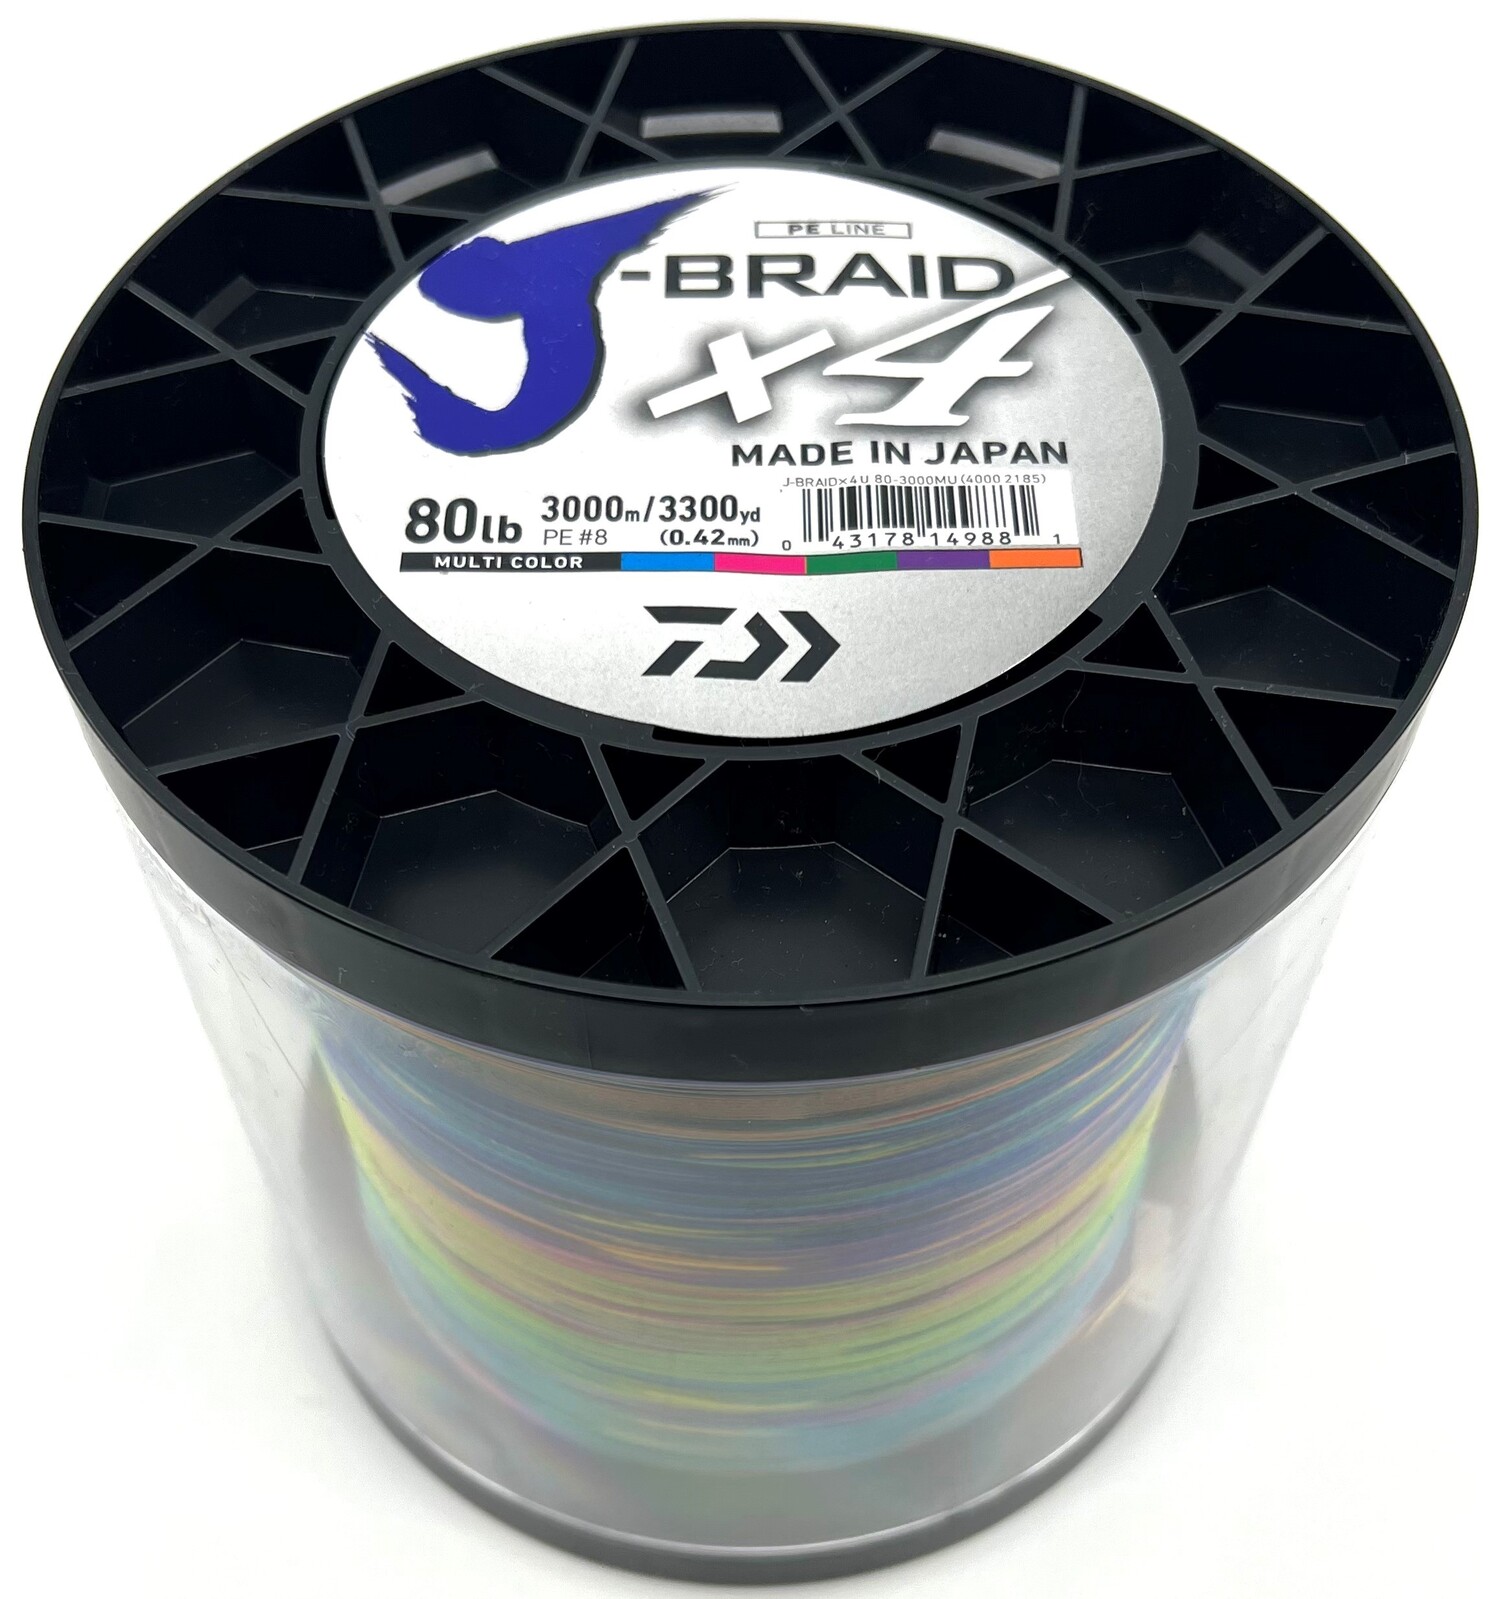 Daiwa J-Braid X4 3000m Multi Colour Bulk Braid Fishing Line